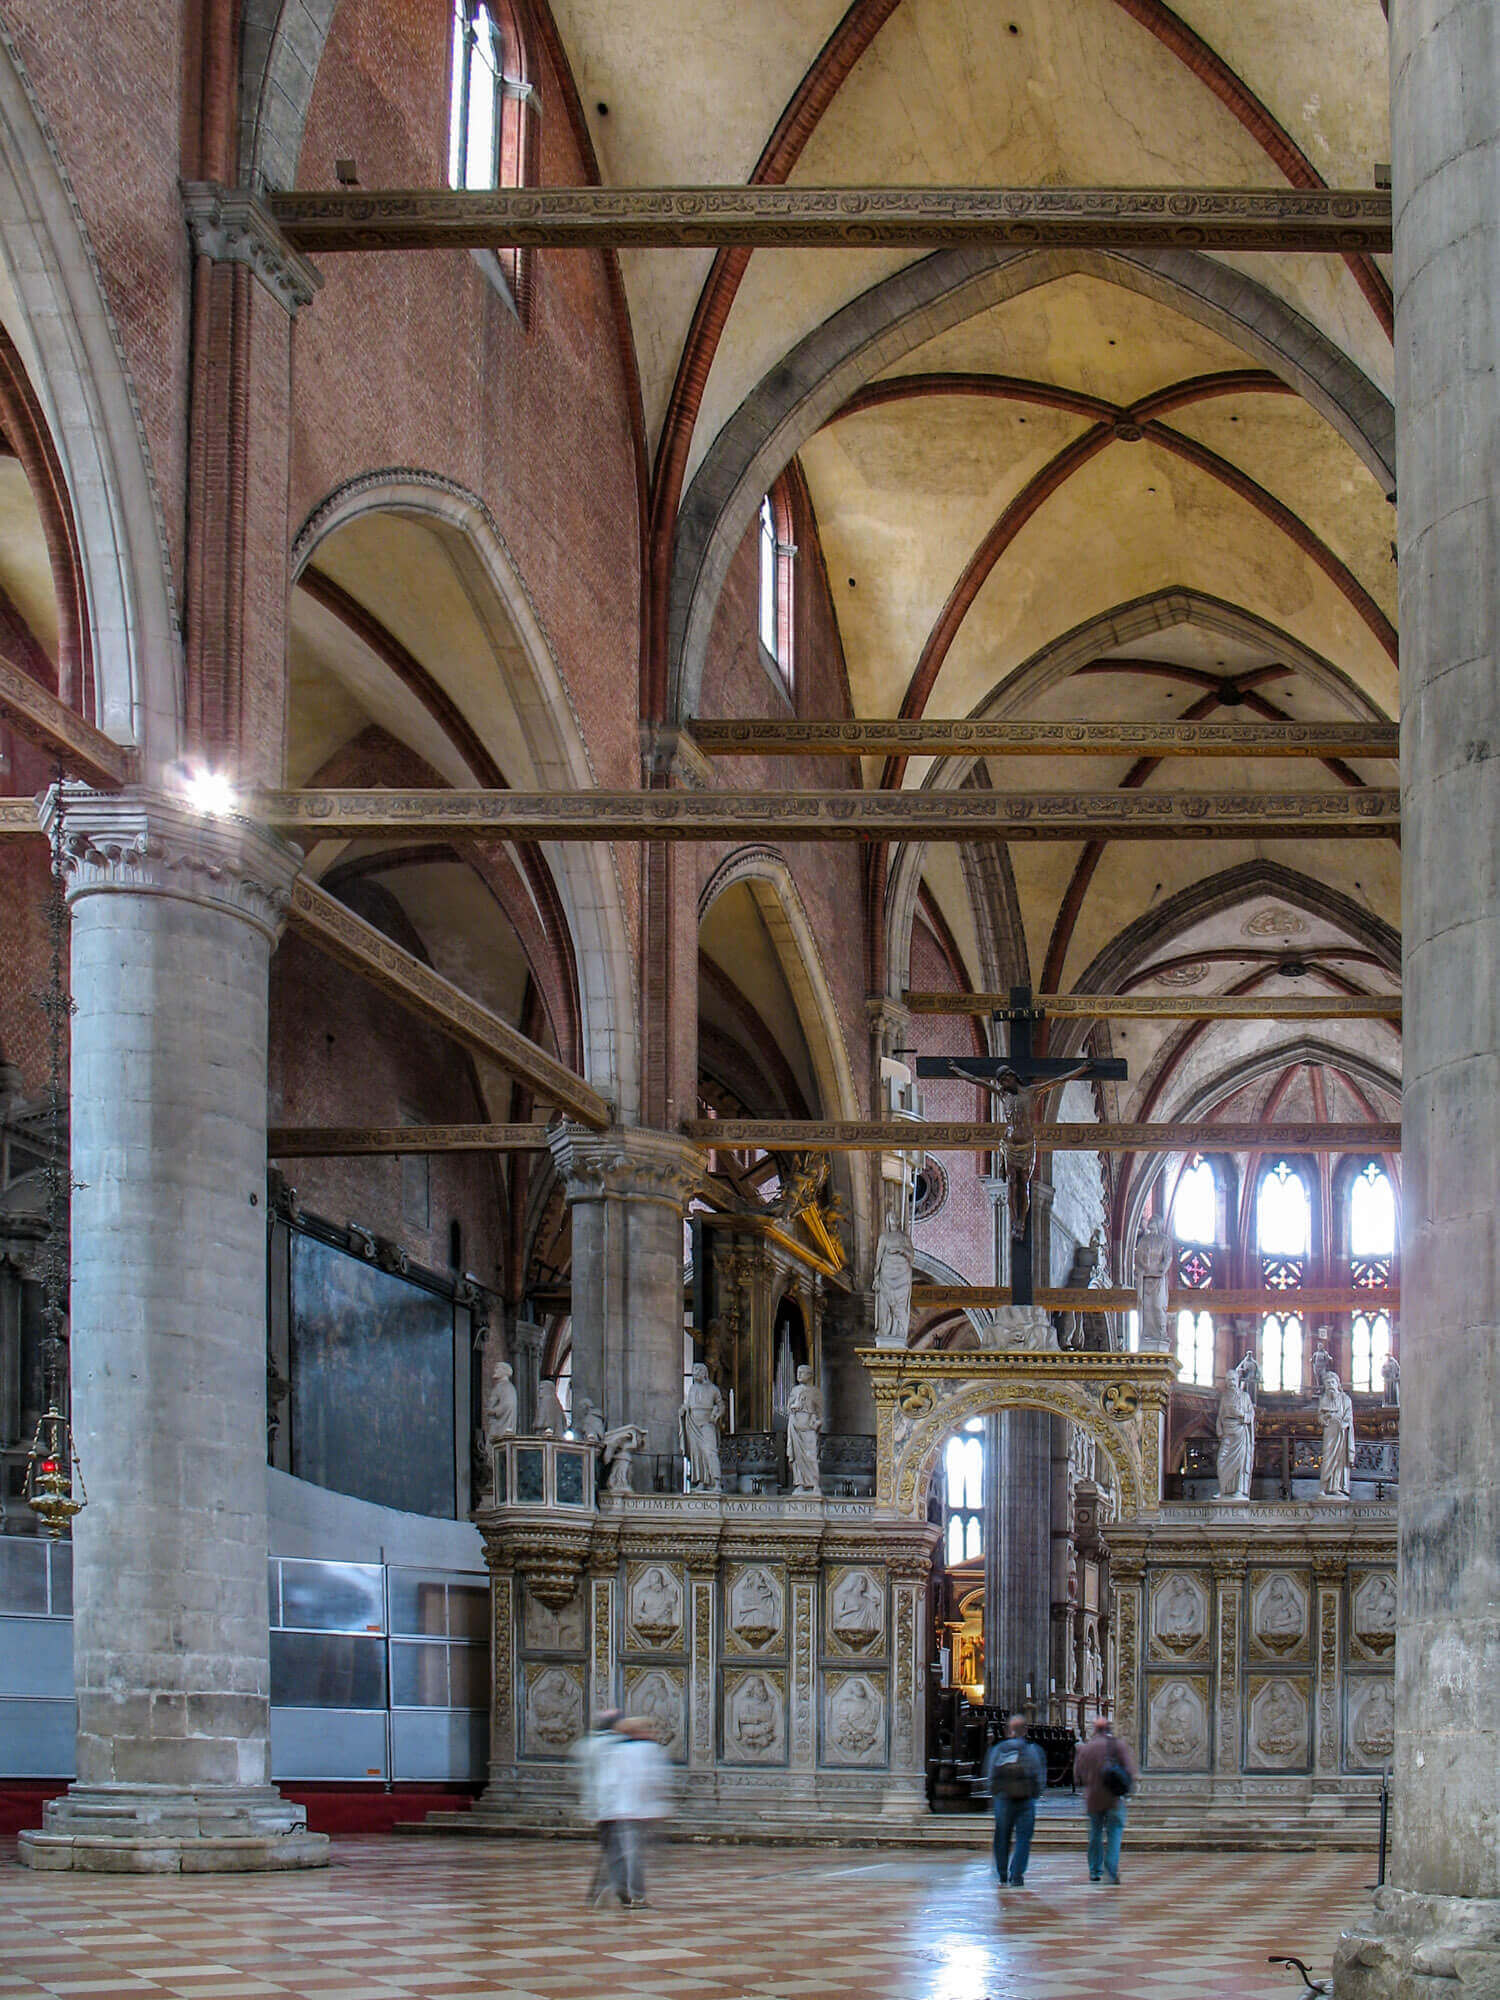 The interior of Santa Maria Gloriosa dei Frari basilica in Venice